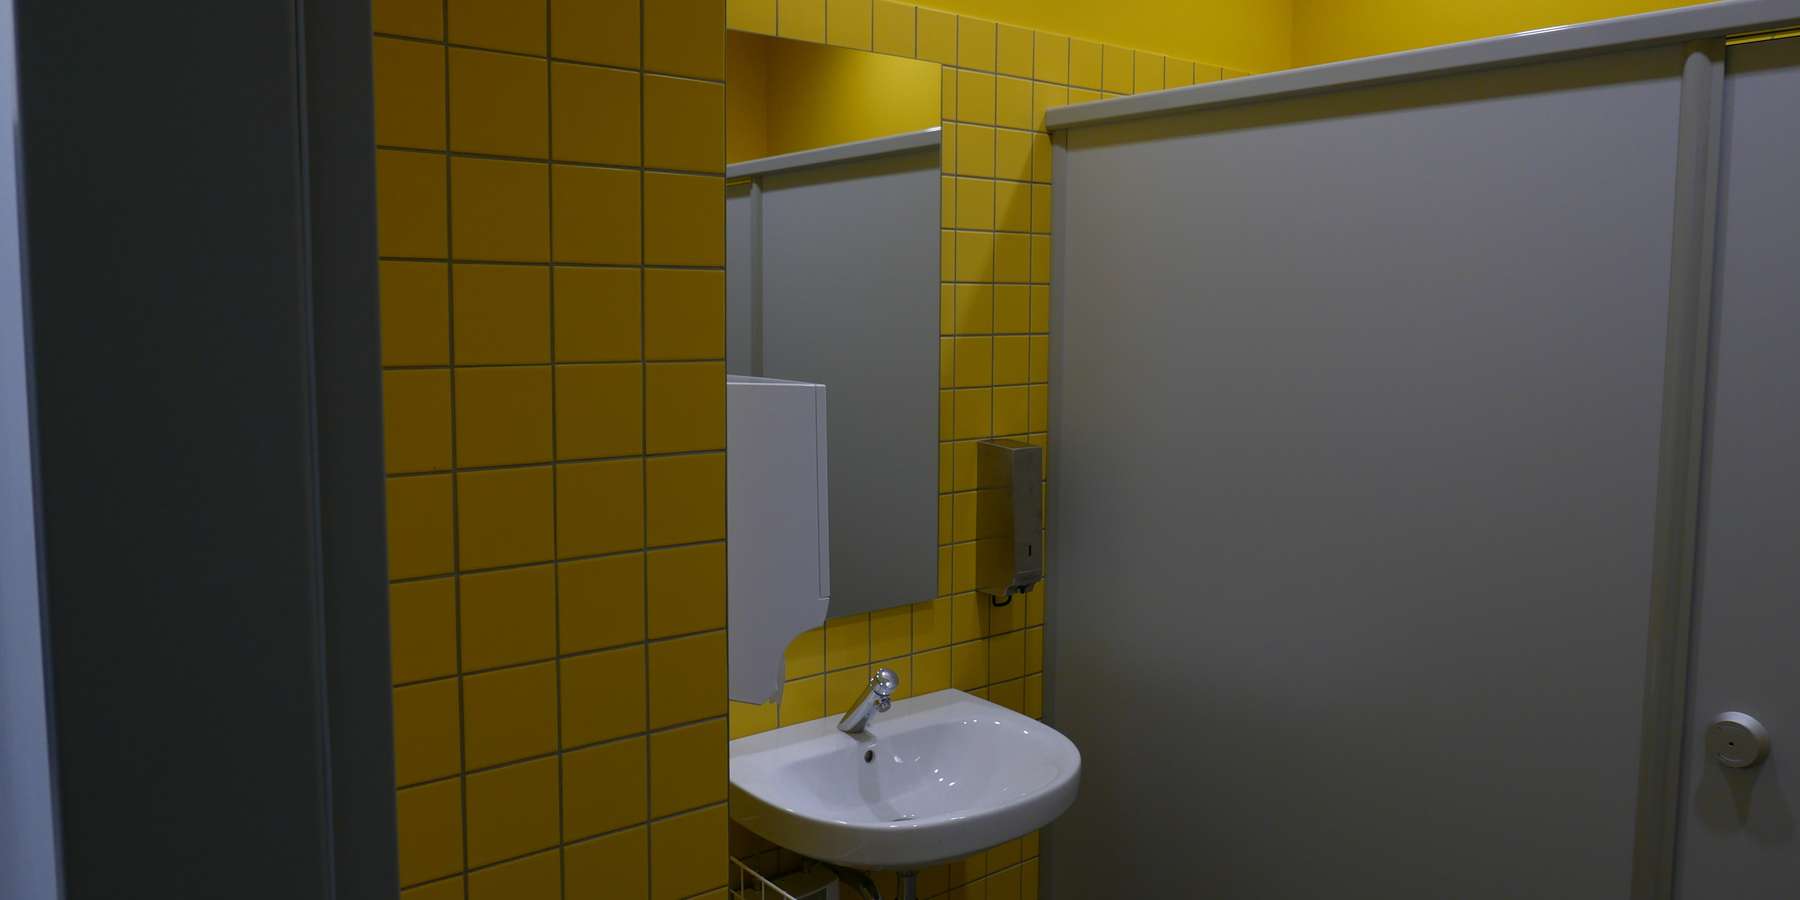 Das Farbschema zeigt die Geschossigkeit an, und wurde im ganzen Gebäude verwendet, z.B. in den WCs und Teeküchen - hier ein WC mit gelben Fliesen an den Wänden © J.Rott